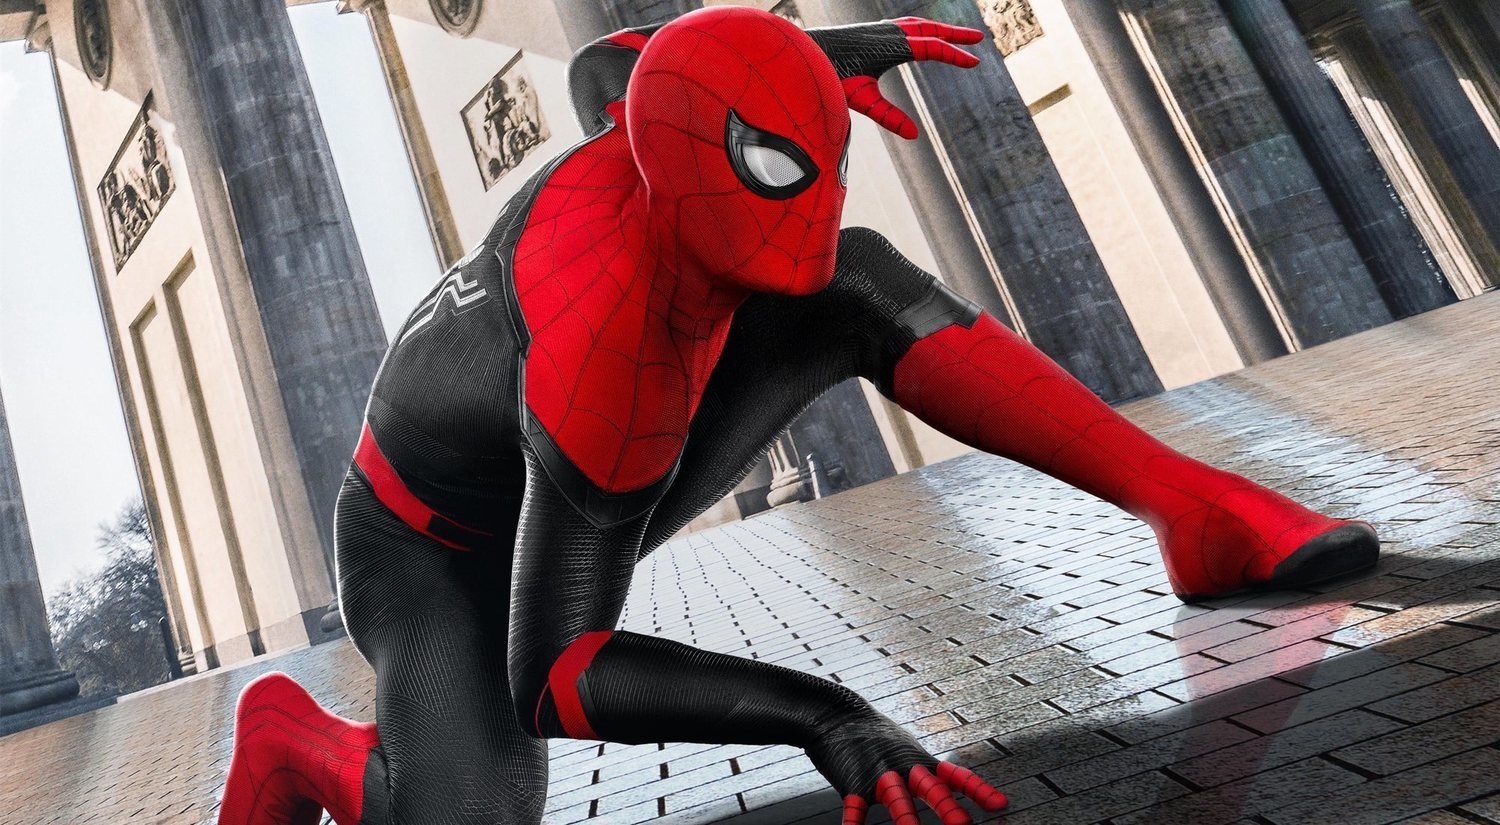 Spider-Man deja Marvel y vuelve a Sony: por qué es bueno y malo a la vez